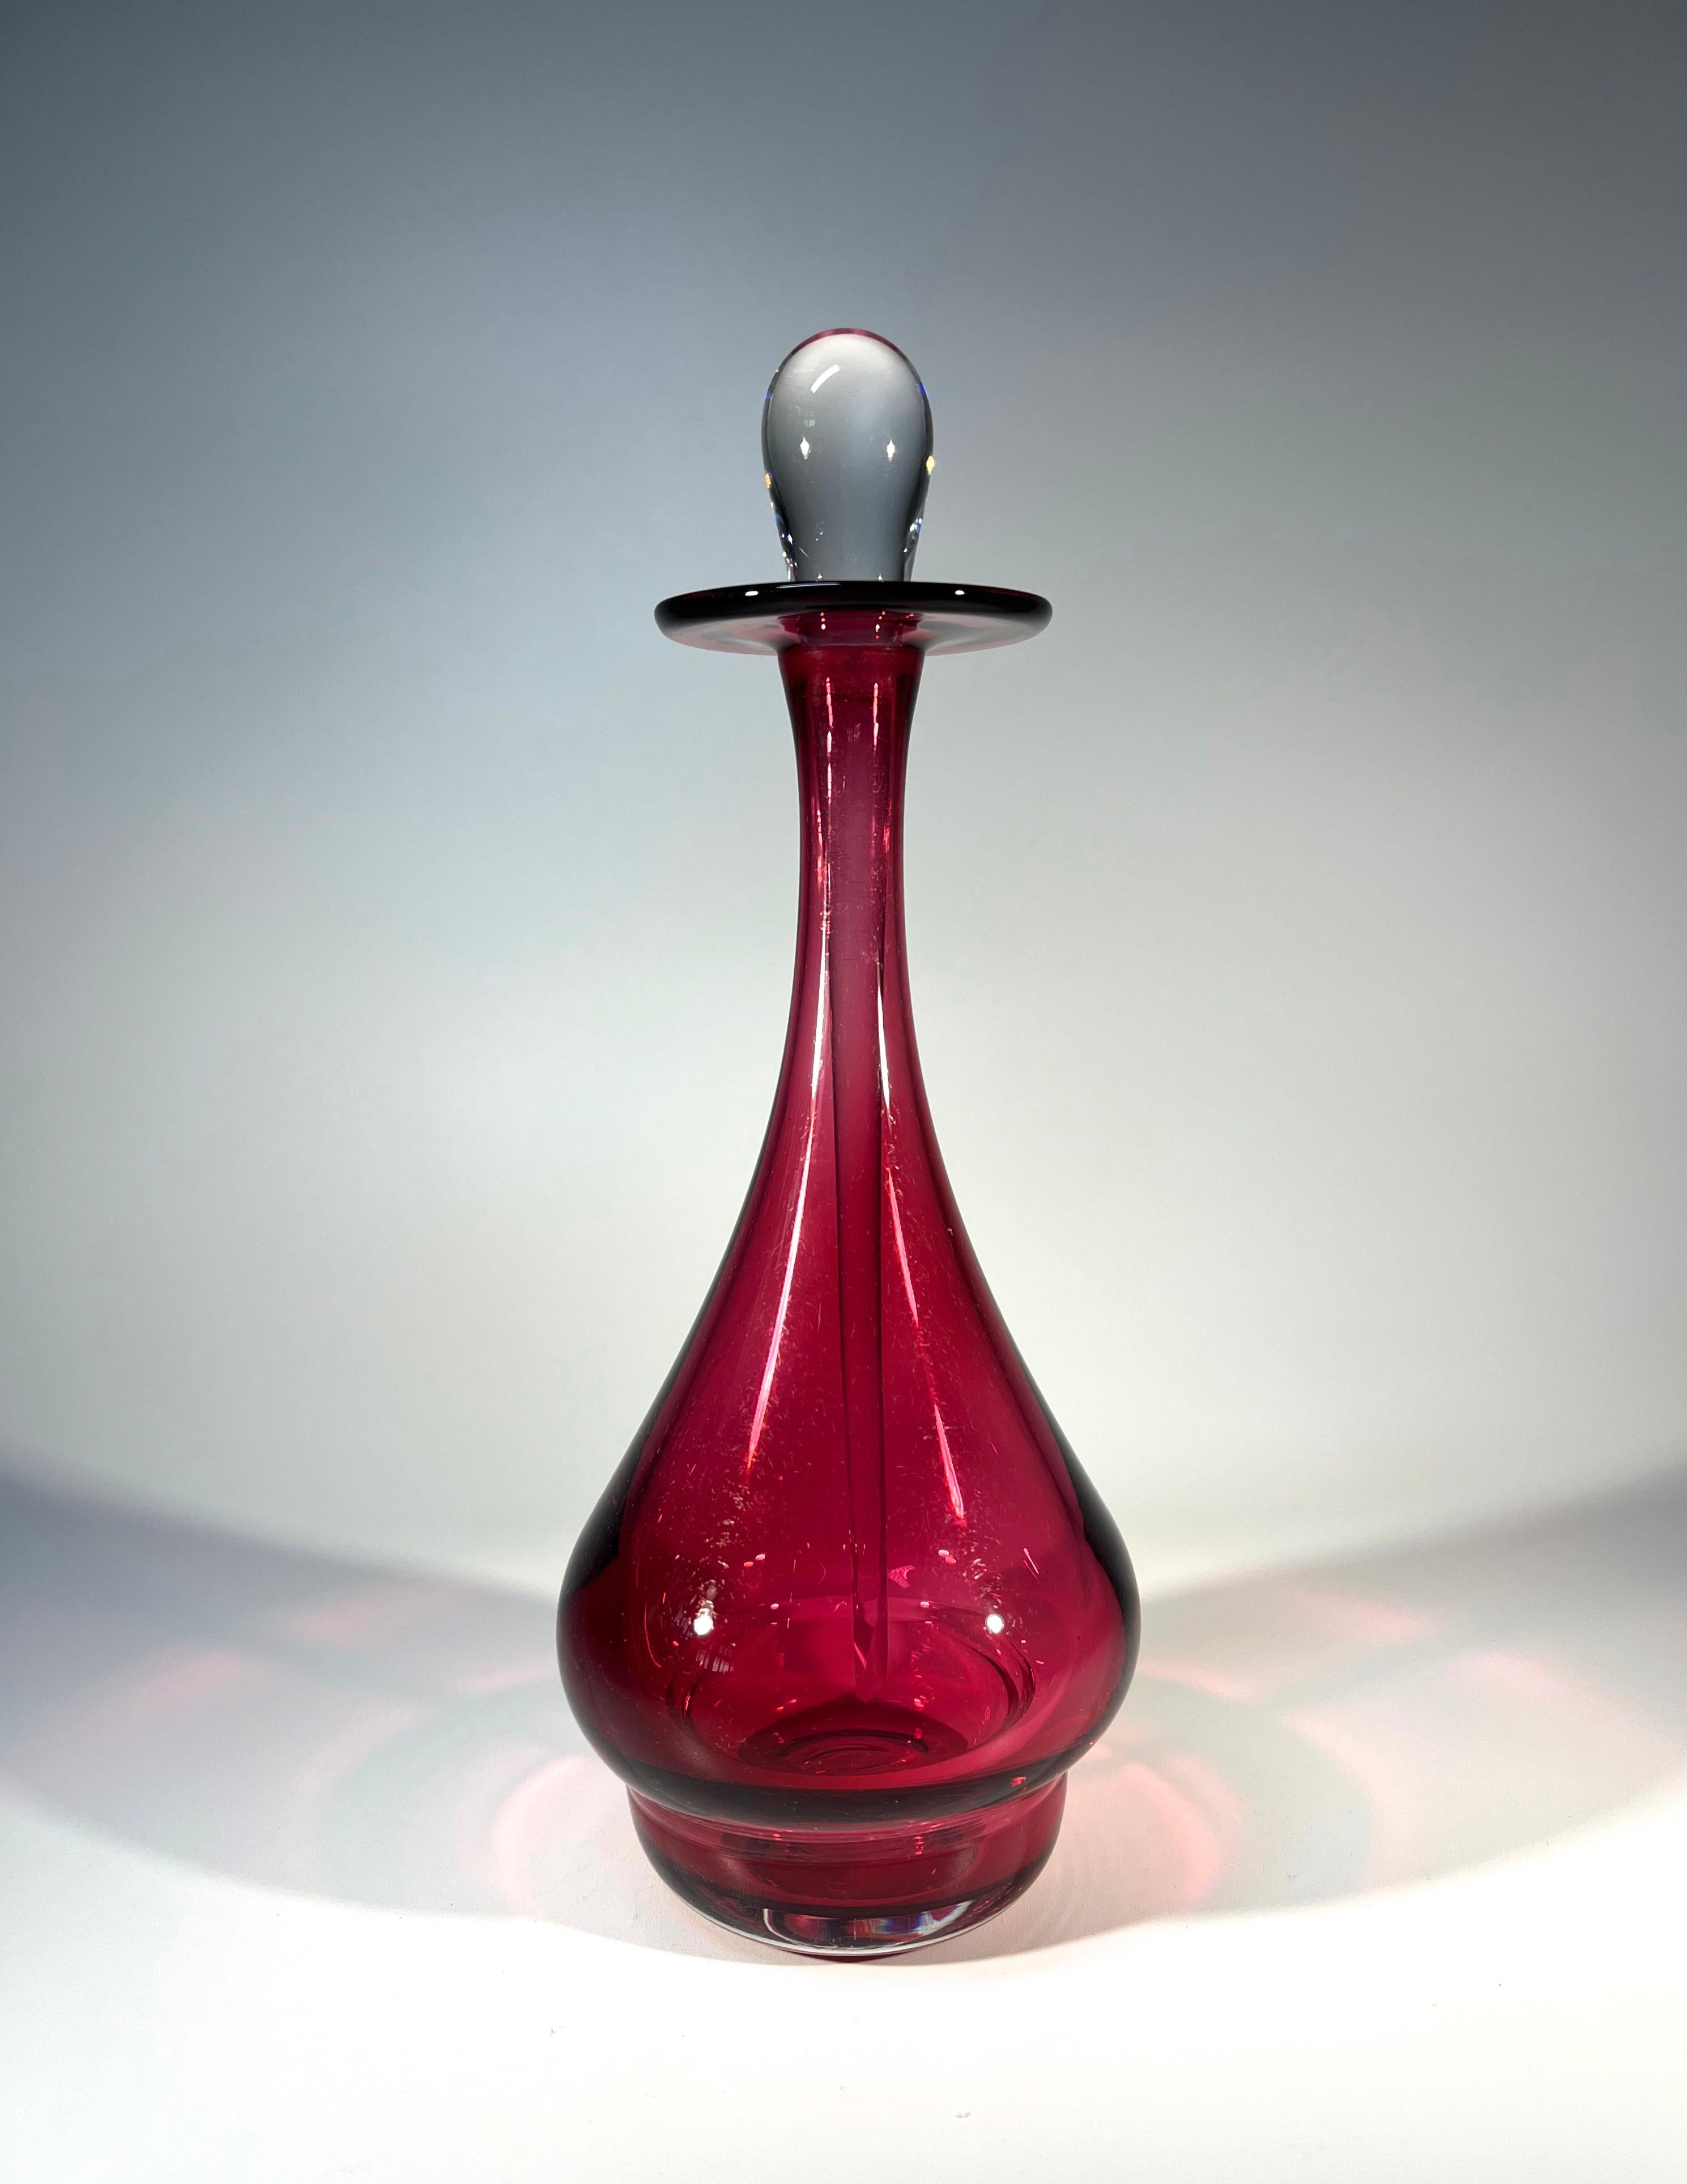 Köstlicher Parfümflakon aus rosa Himbeerglas, traditionell handgefertigt von Bristol Glass, England
Wunderschön geformte Flasche mit einer fabelhaften, länglichen, klaren Tropferspitze
Eine elegante und begehrenswerte Flasche
CIRCA 2000
Höhe 7,5